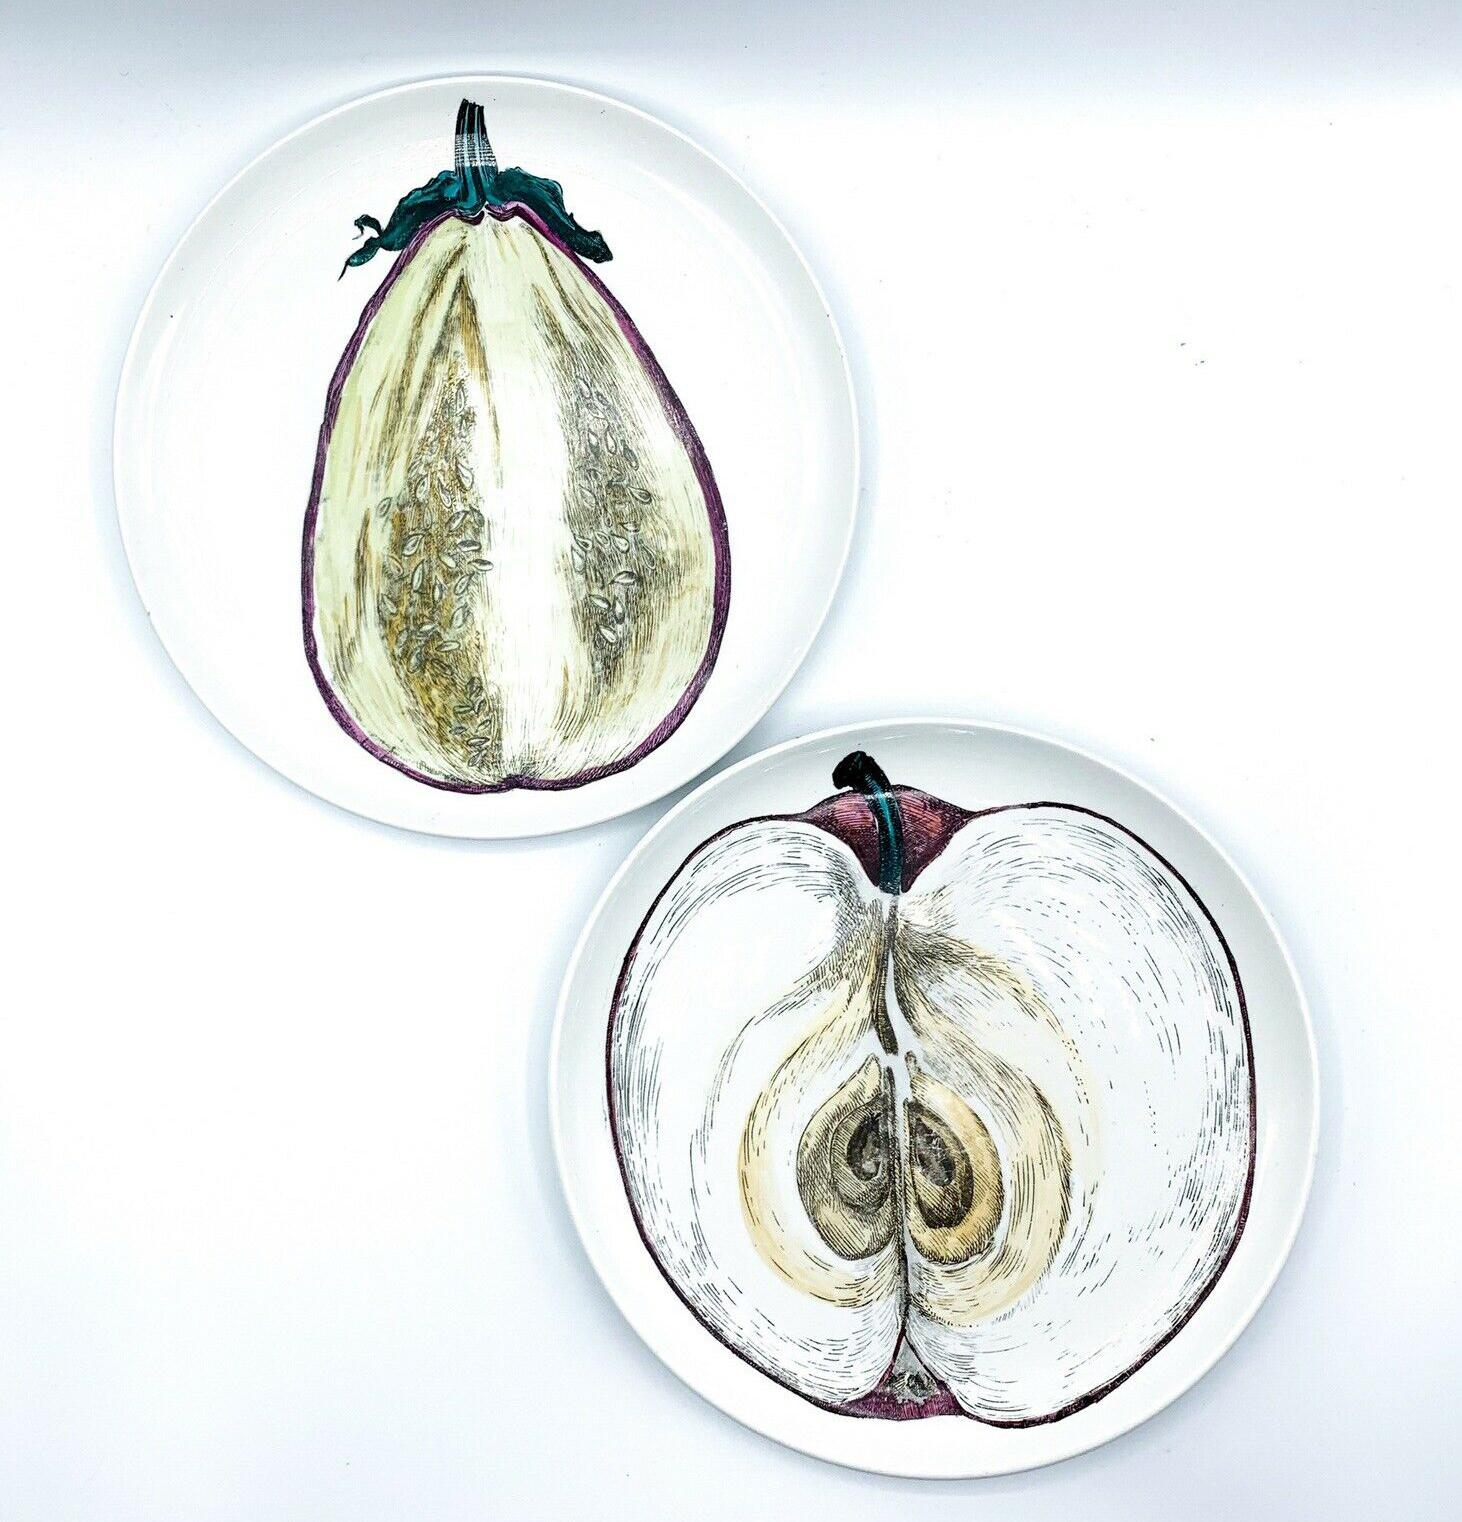 Italian Piero Fornasetti Sezioni Di Frutta Porcelain Plates of an Eggplant & Apple For Sale